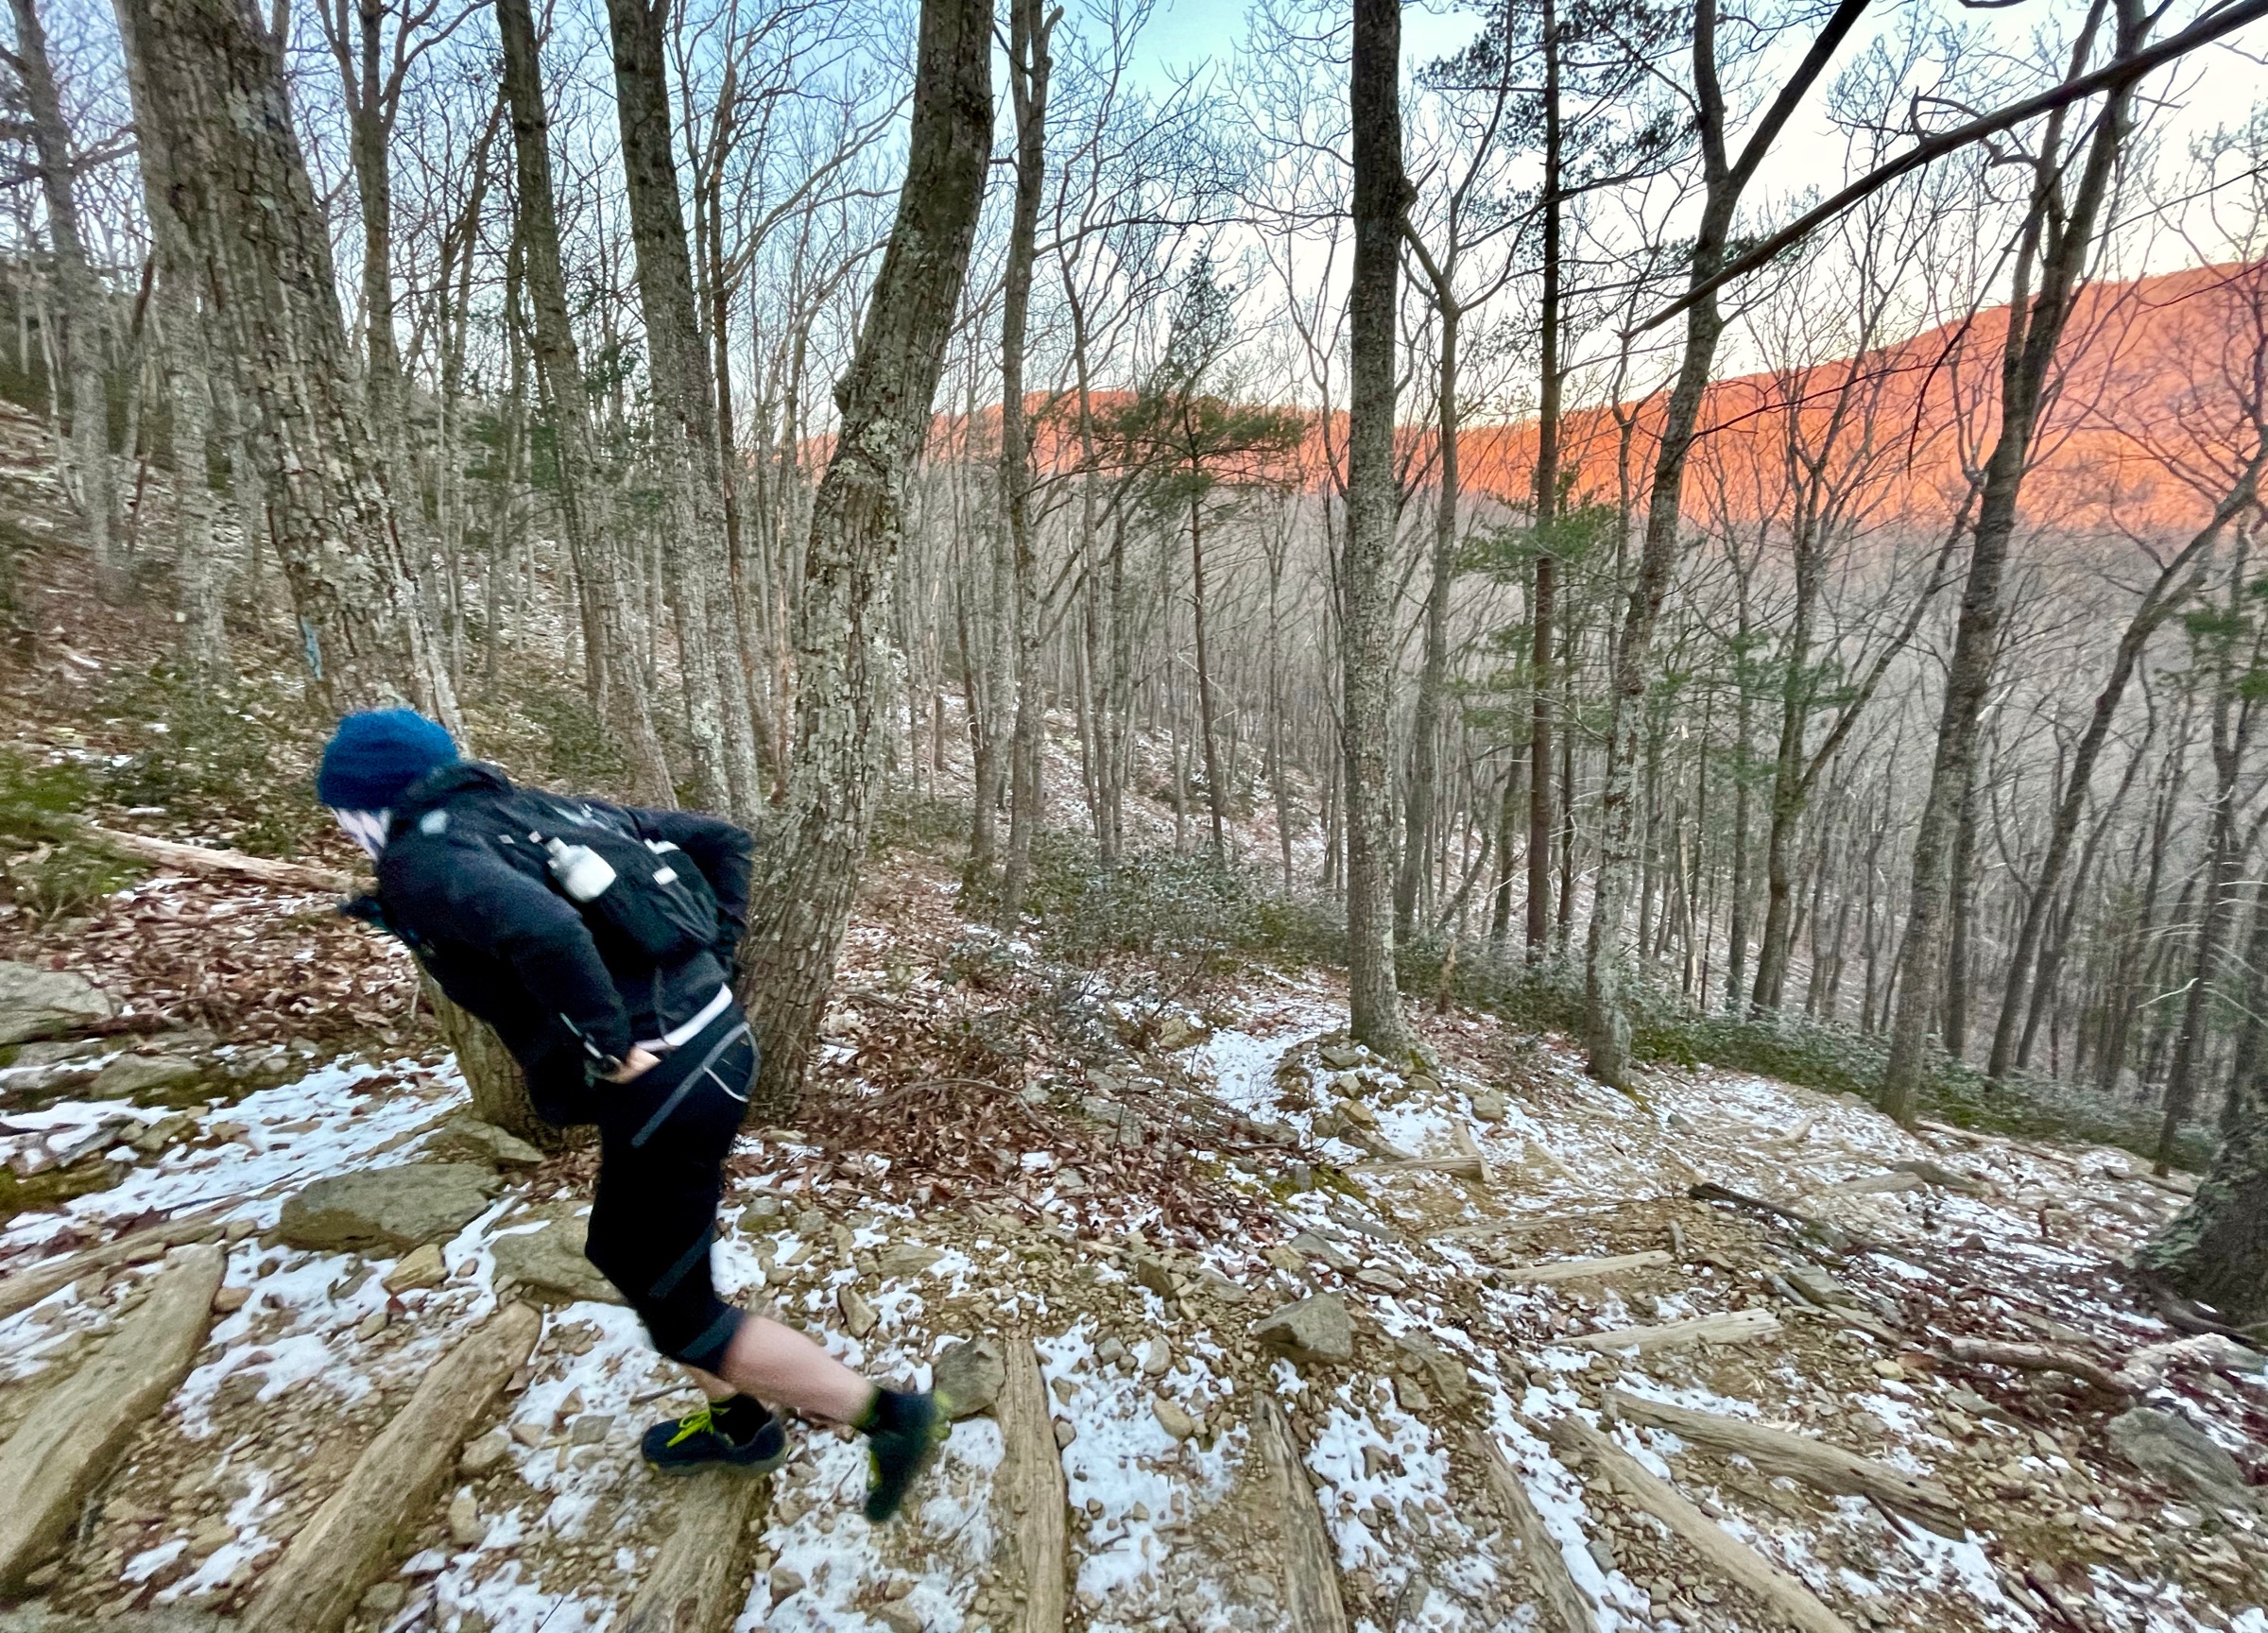 The climb up Buck Ridge